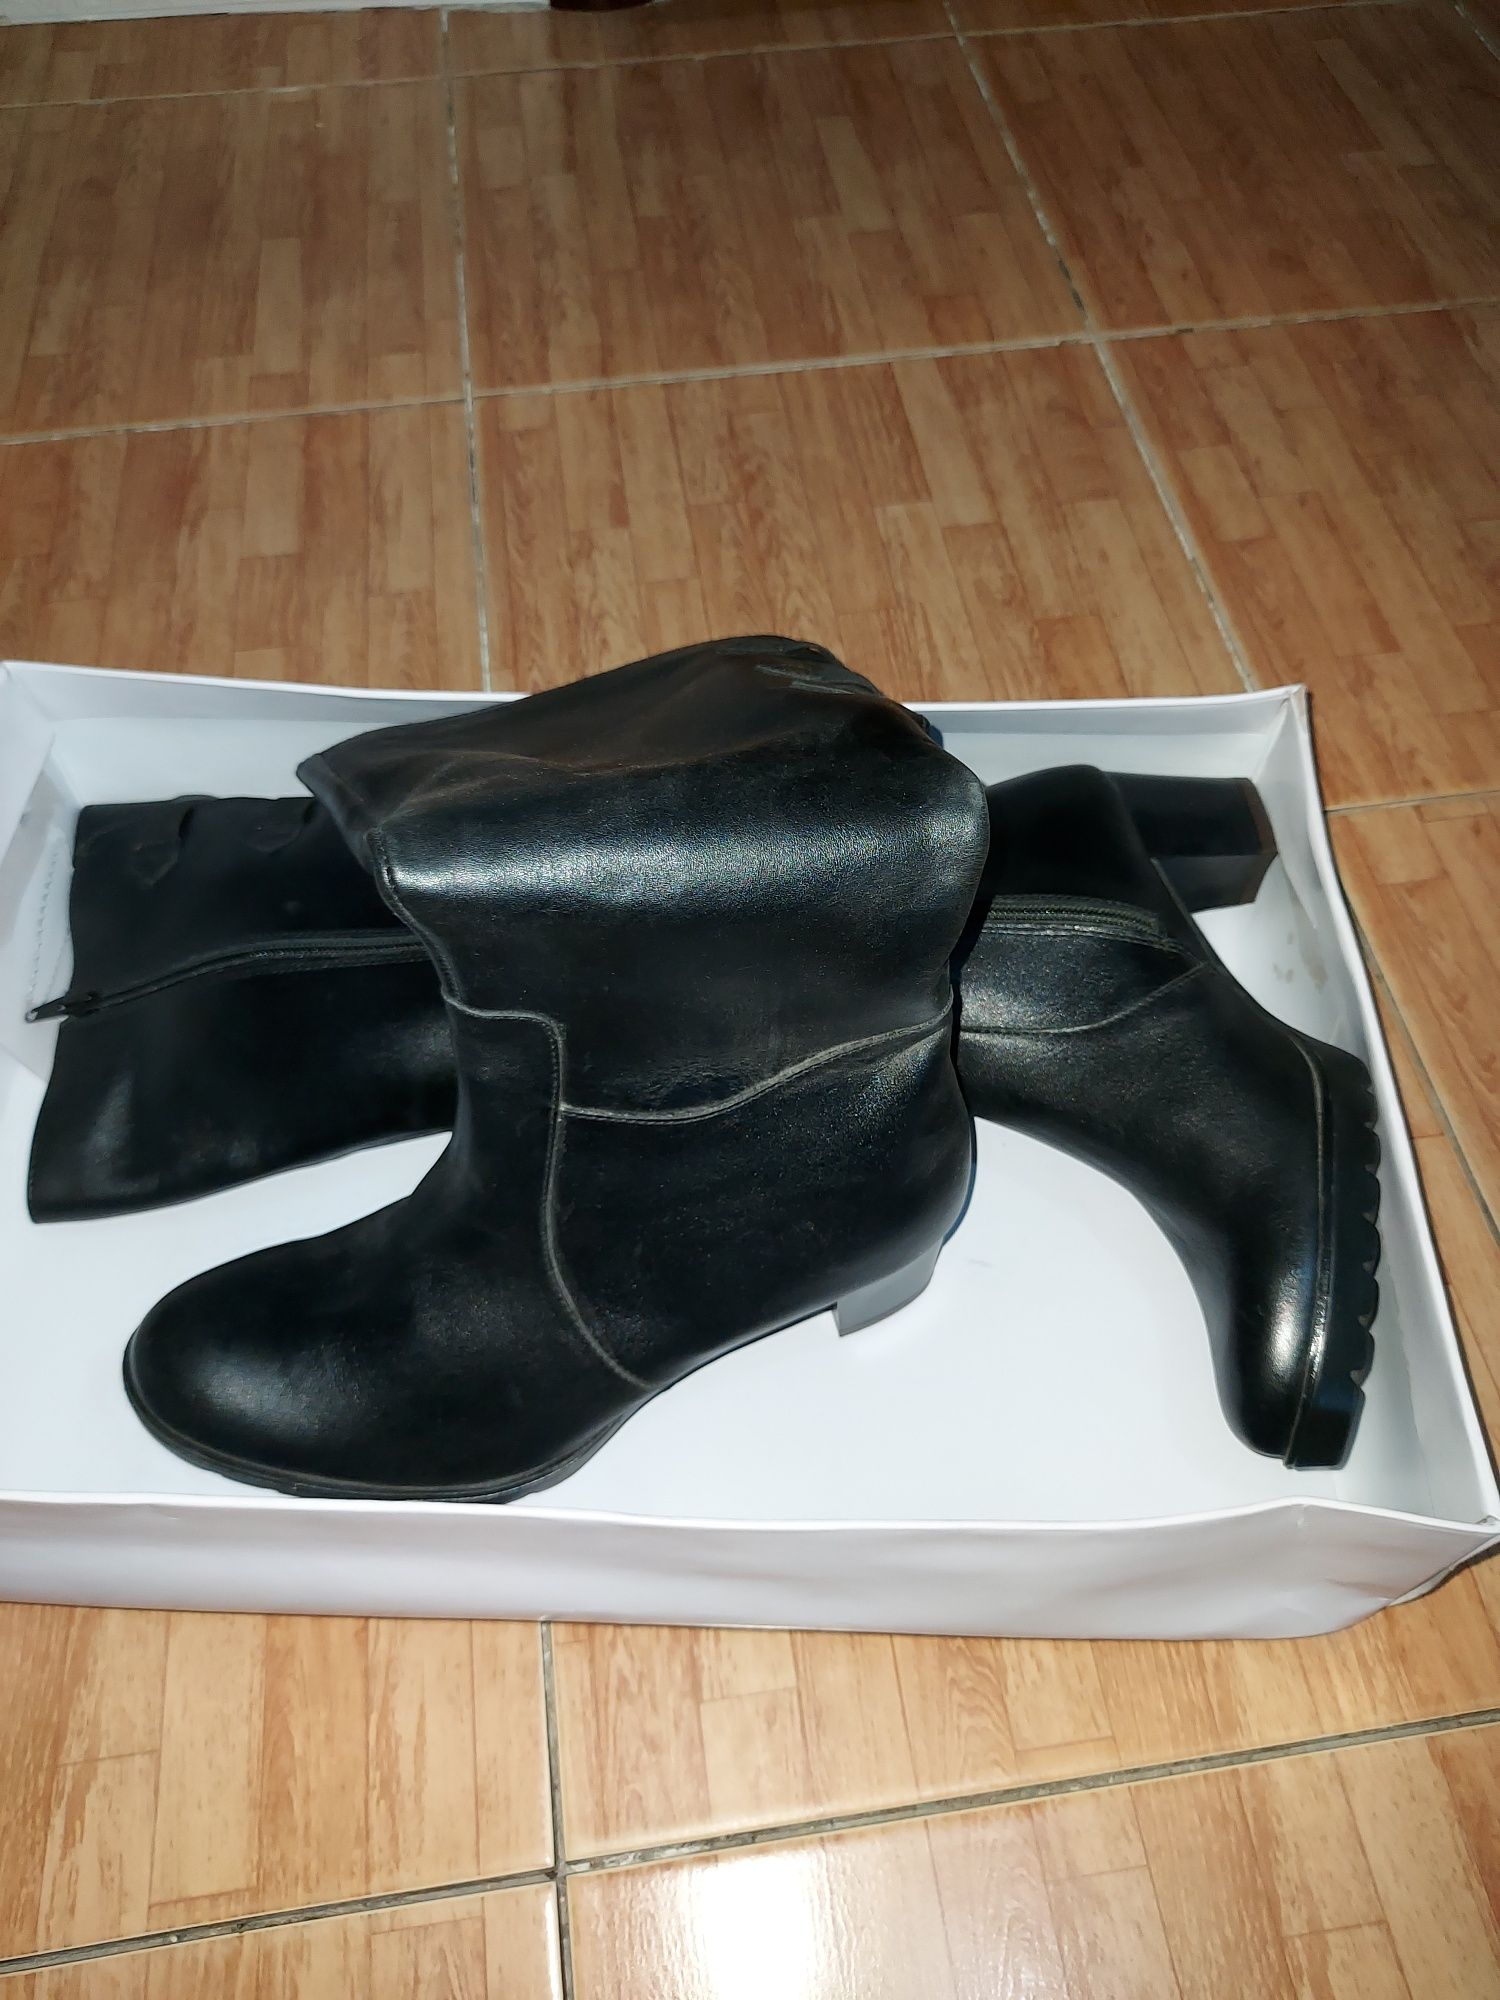 Срочно кожаные сапоги, ботинки пр-во Италия